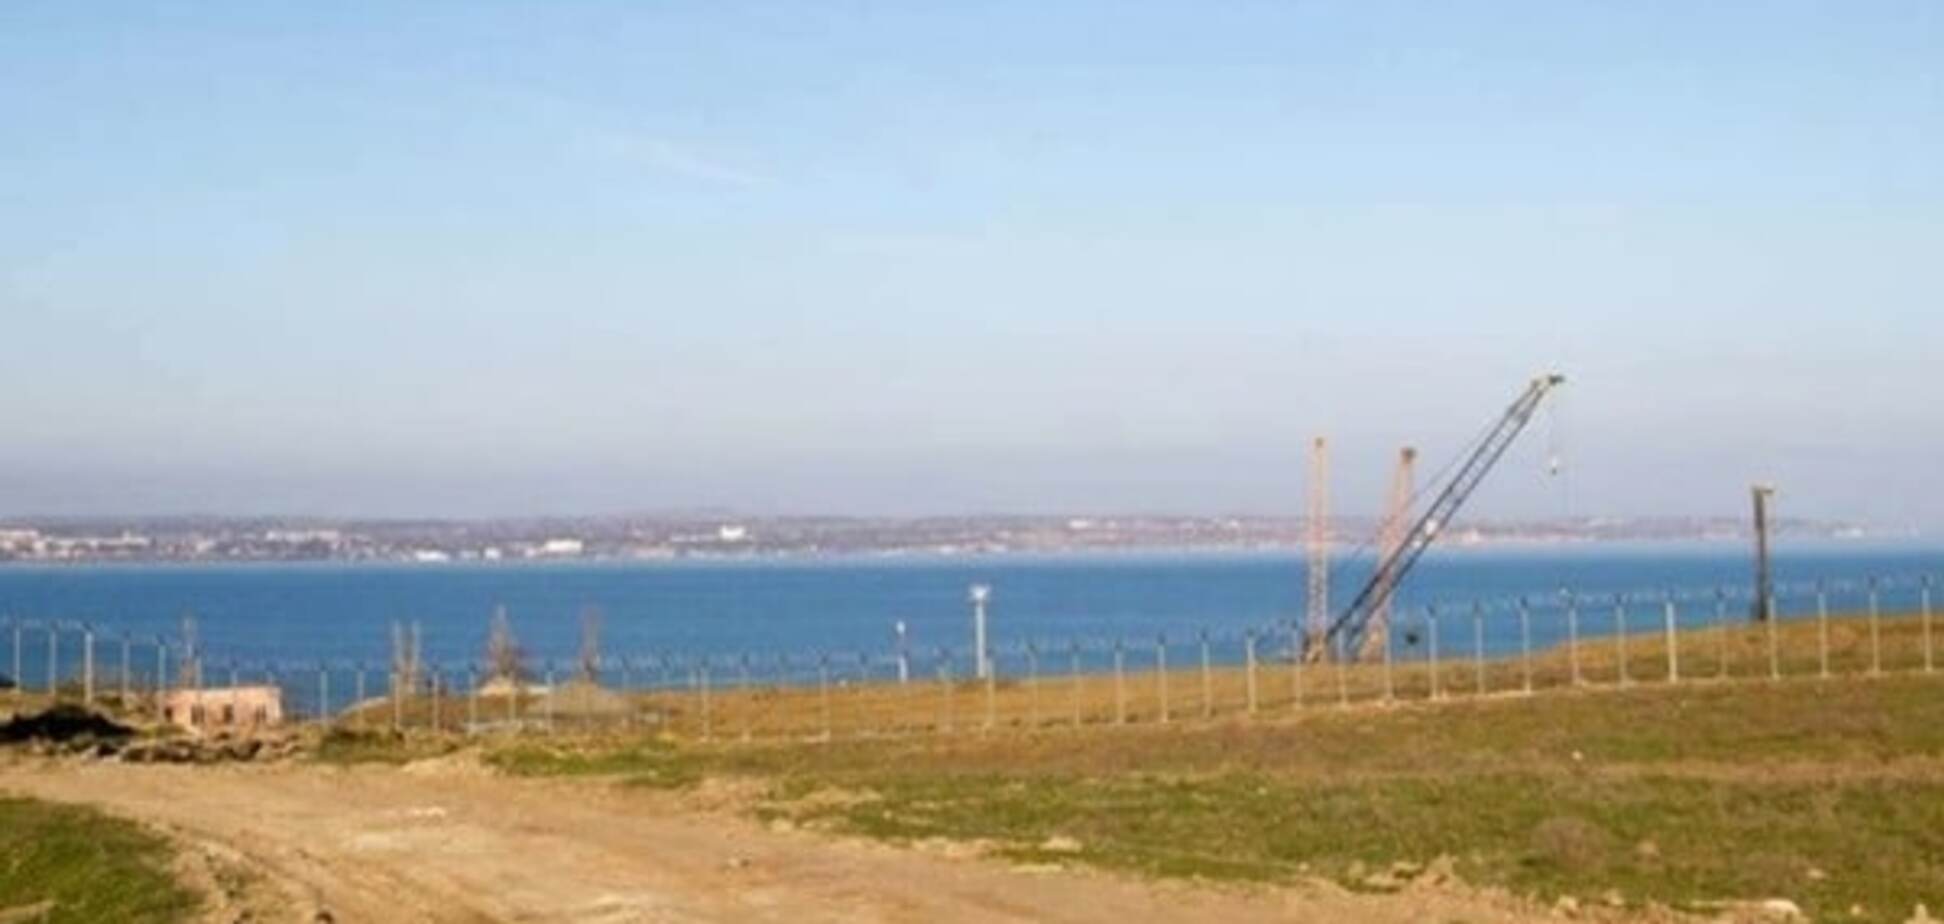 Спецтехника и колючая проволока: в сети появились свежие фото и видео строительства Керченского моста